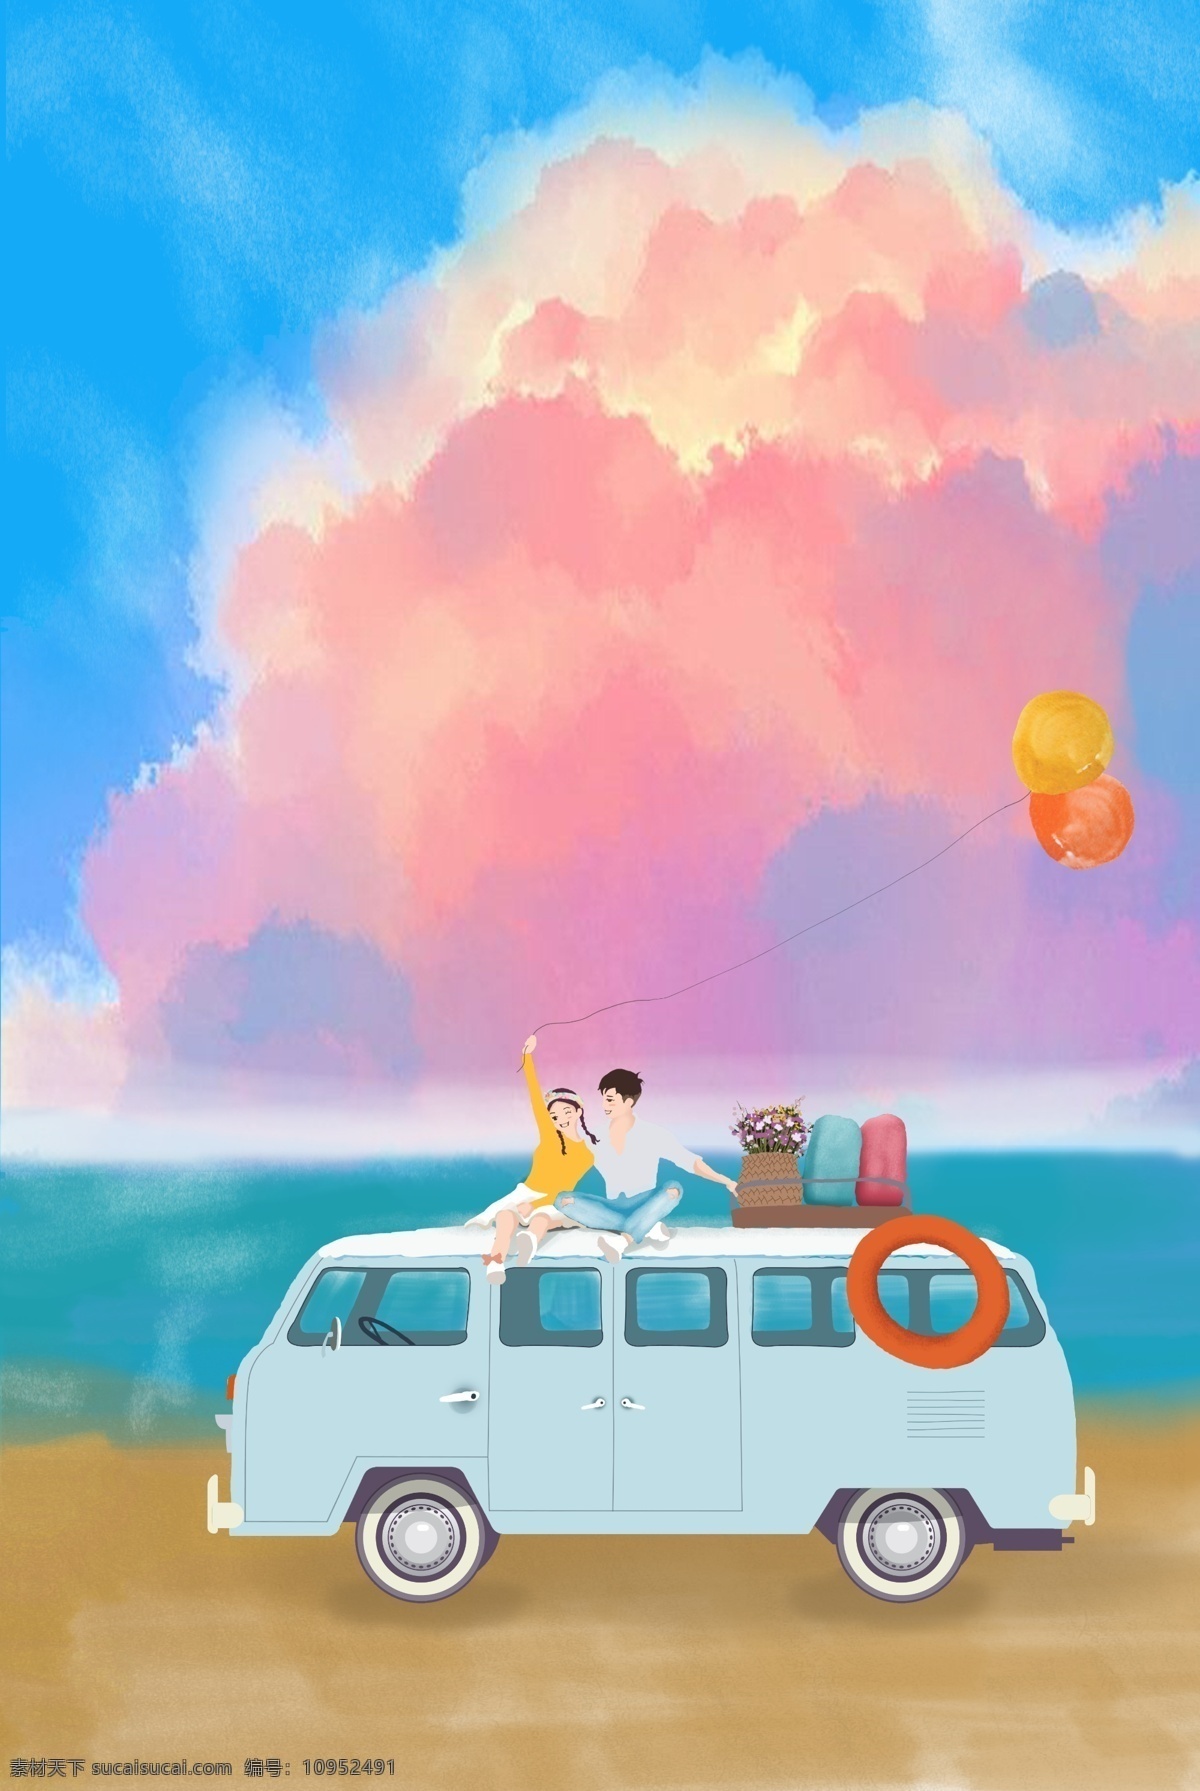 清新 手绘 情侣 海边 旅行 海报 背景 小清新 依偎 沙滩 巴士 气球 彩云 爱情 浪漫 欢快 开心 温暖 幸福